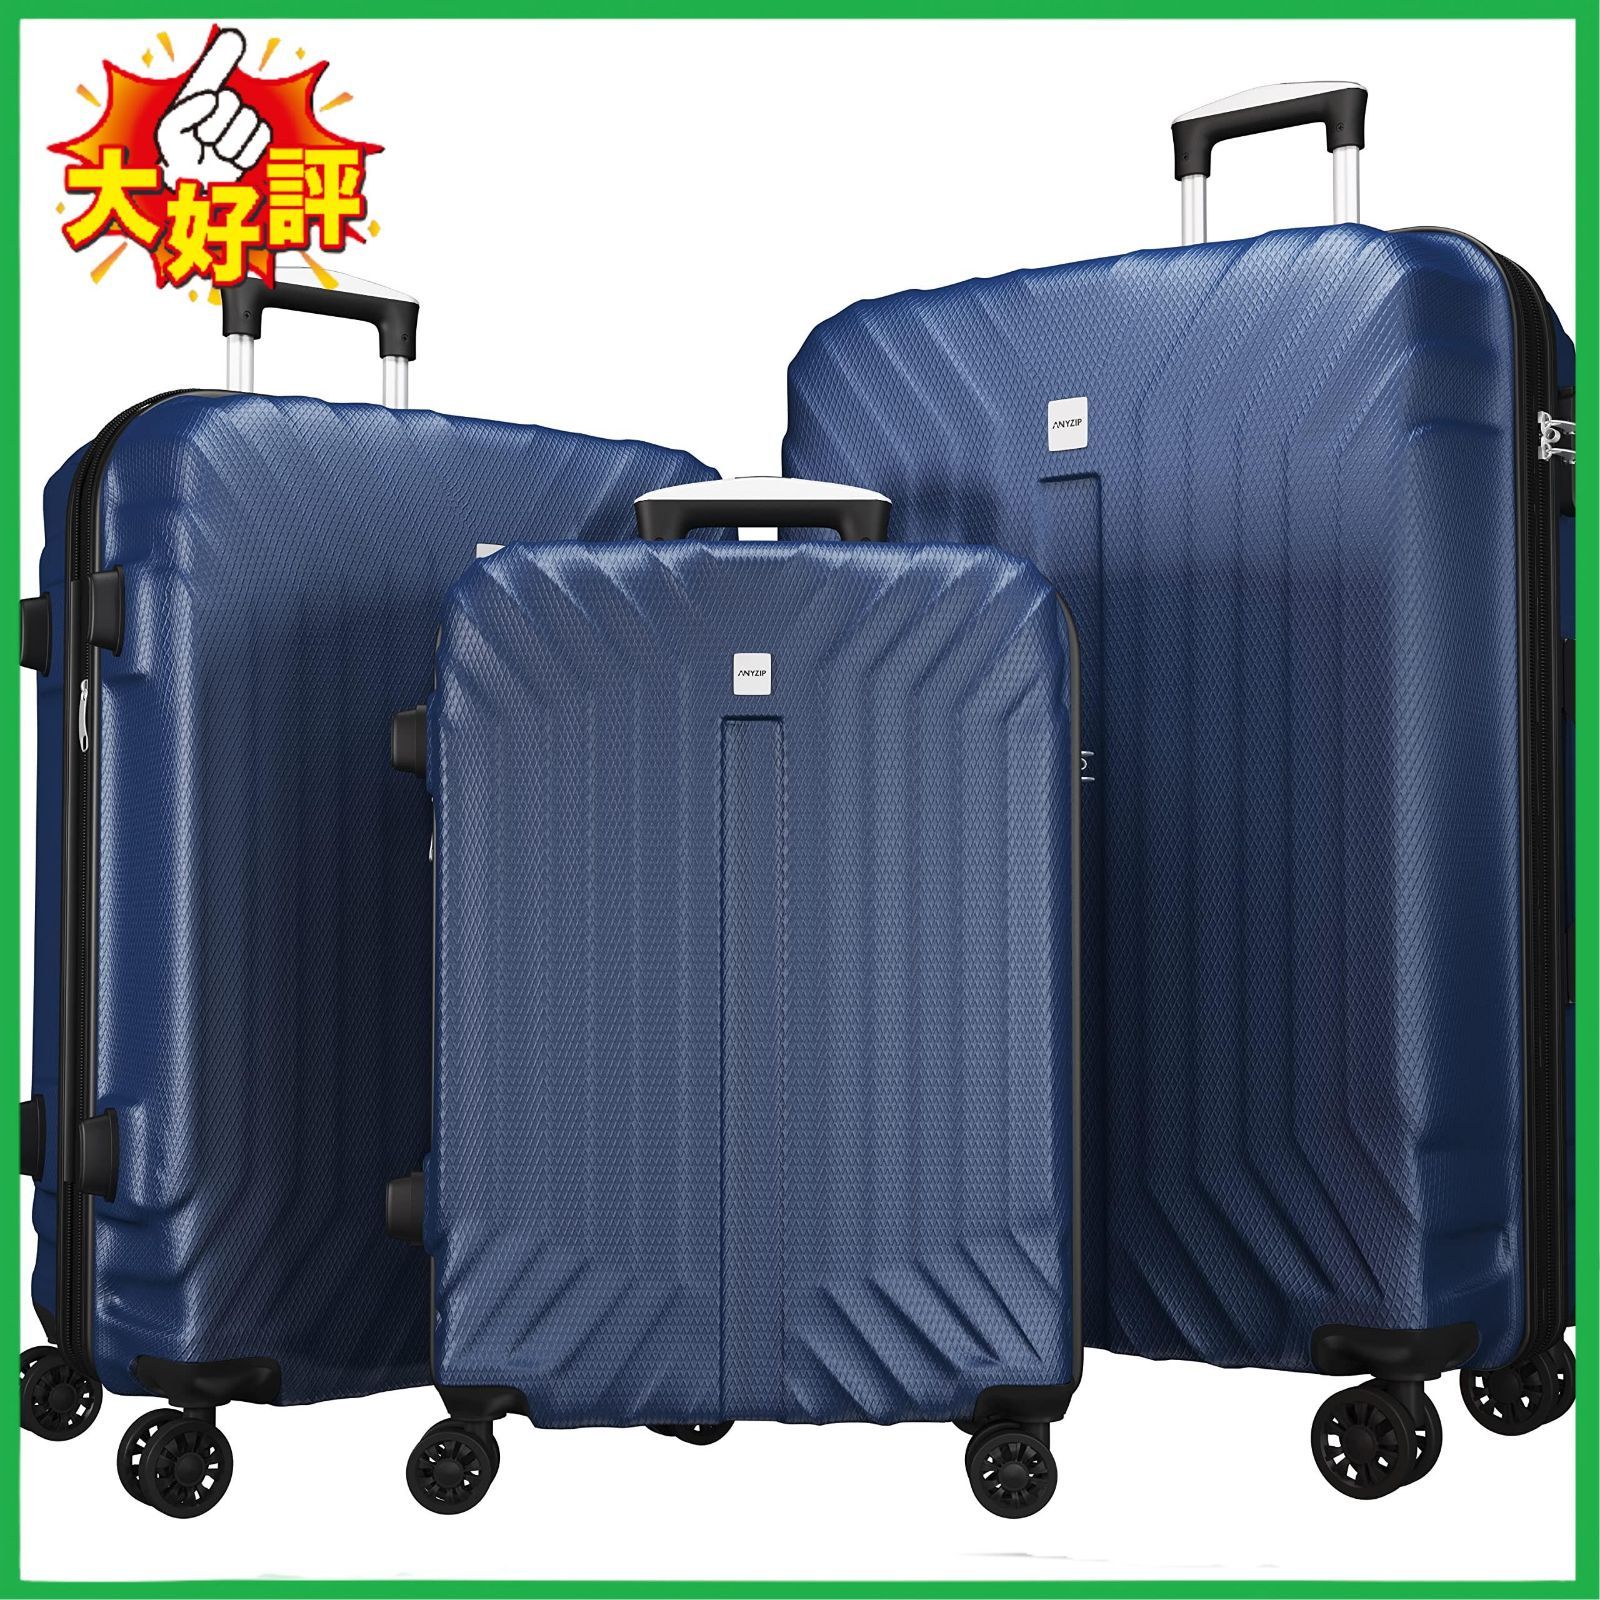 スーツケース キャリーケース キャリーバッグ 超軽量 大容量 拡張機能付き